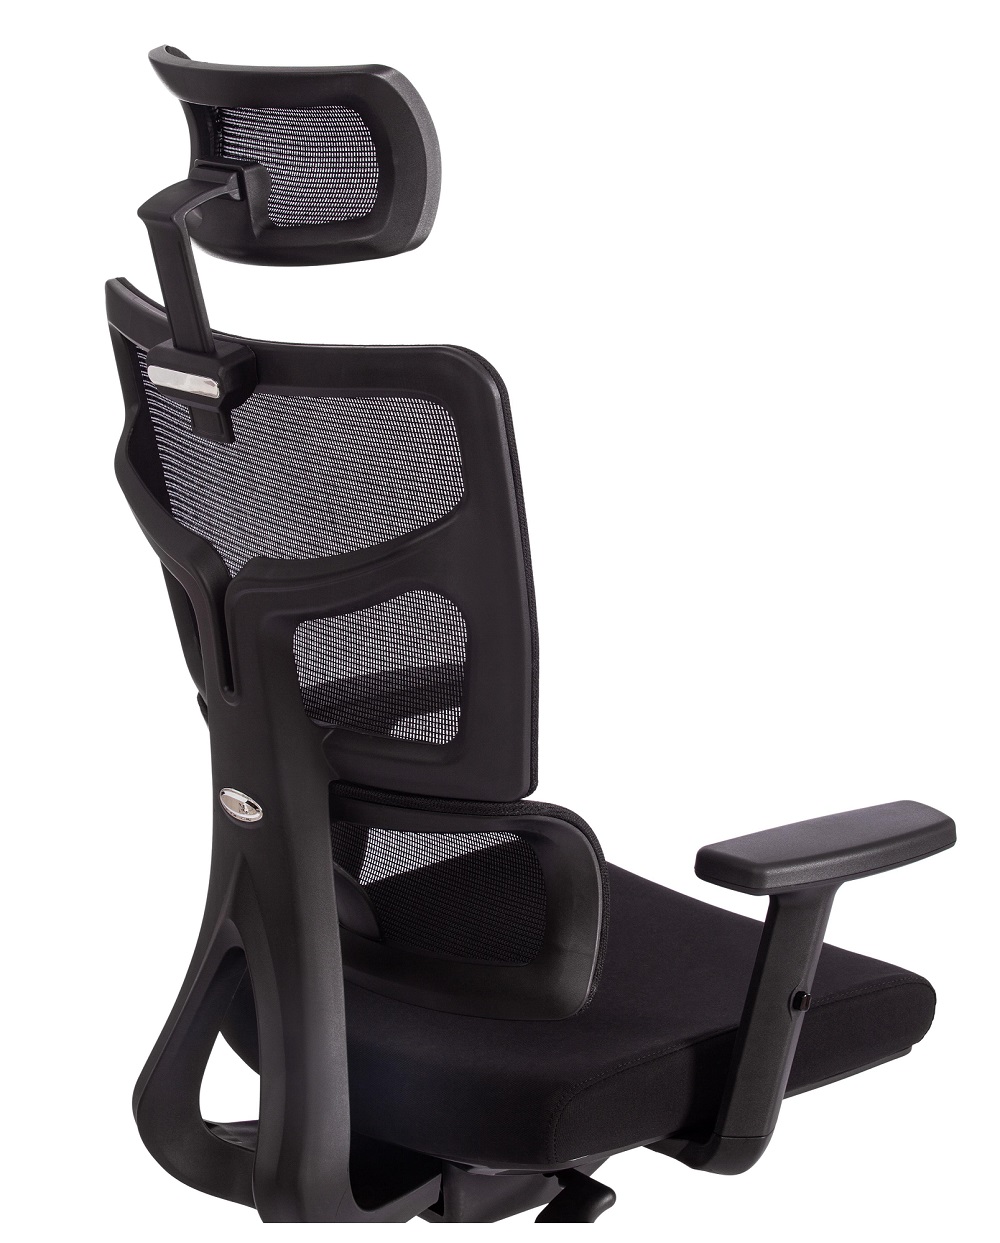 Кресло компьютерное с сеткой. Цвет черный.